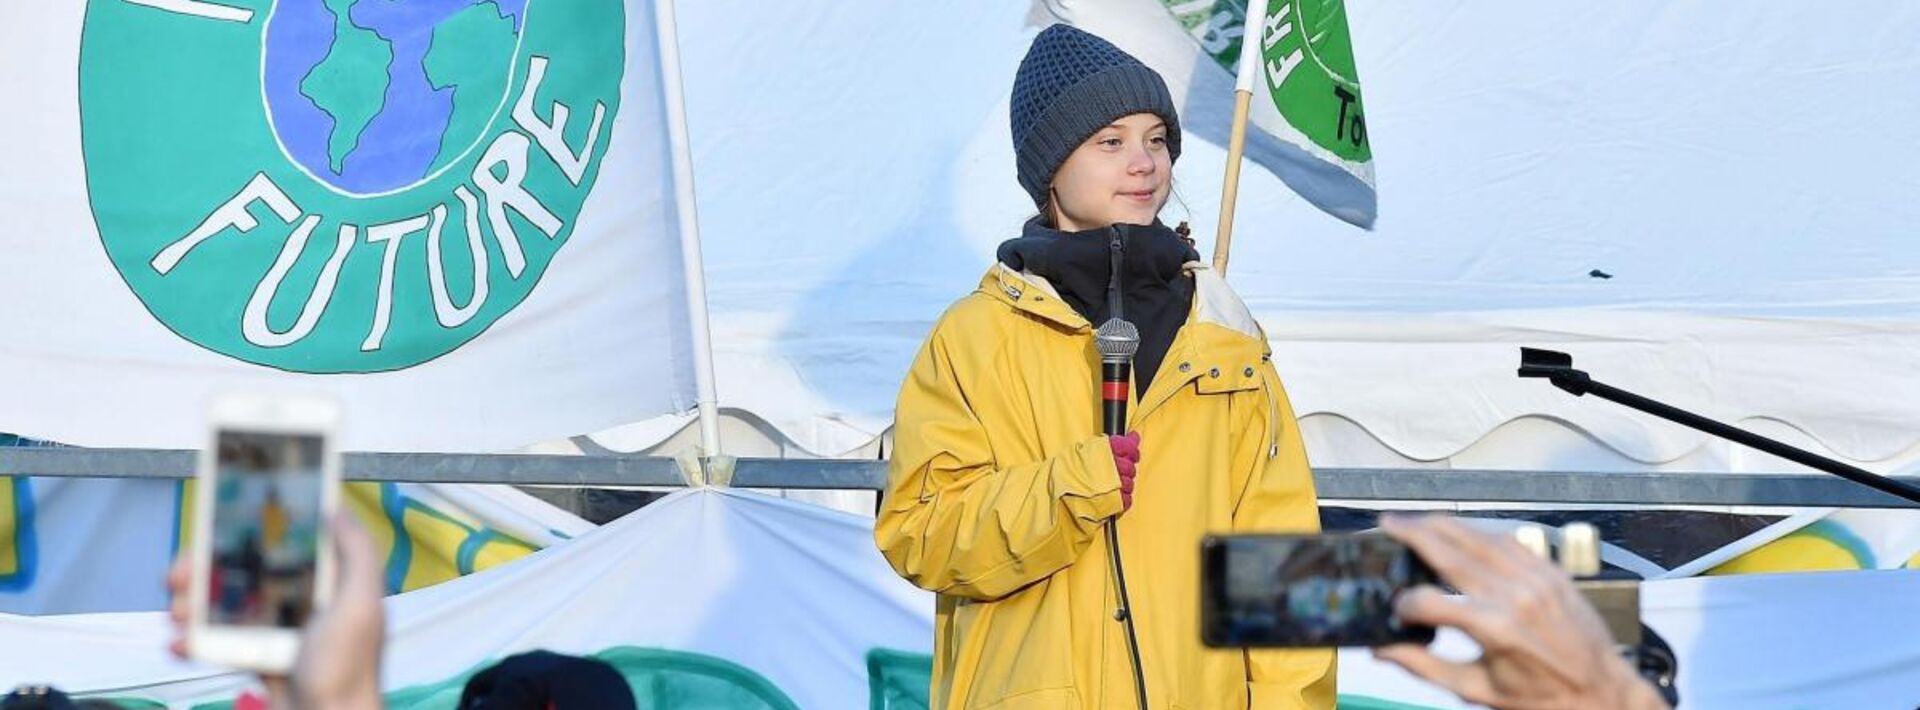 Greta Thunberg llegando a Portugal después de varios días navegando el Atlántico